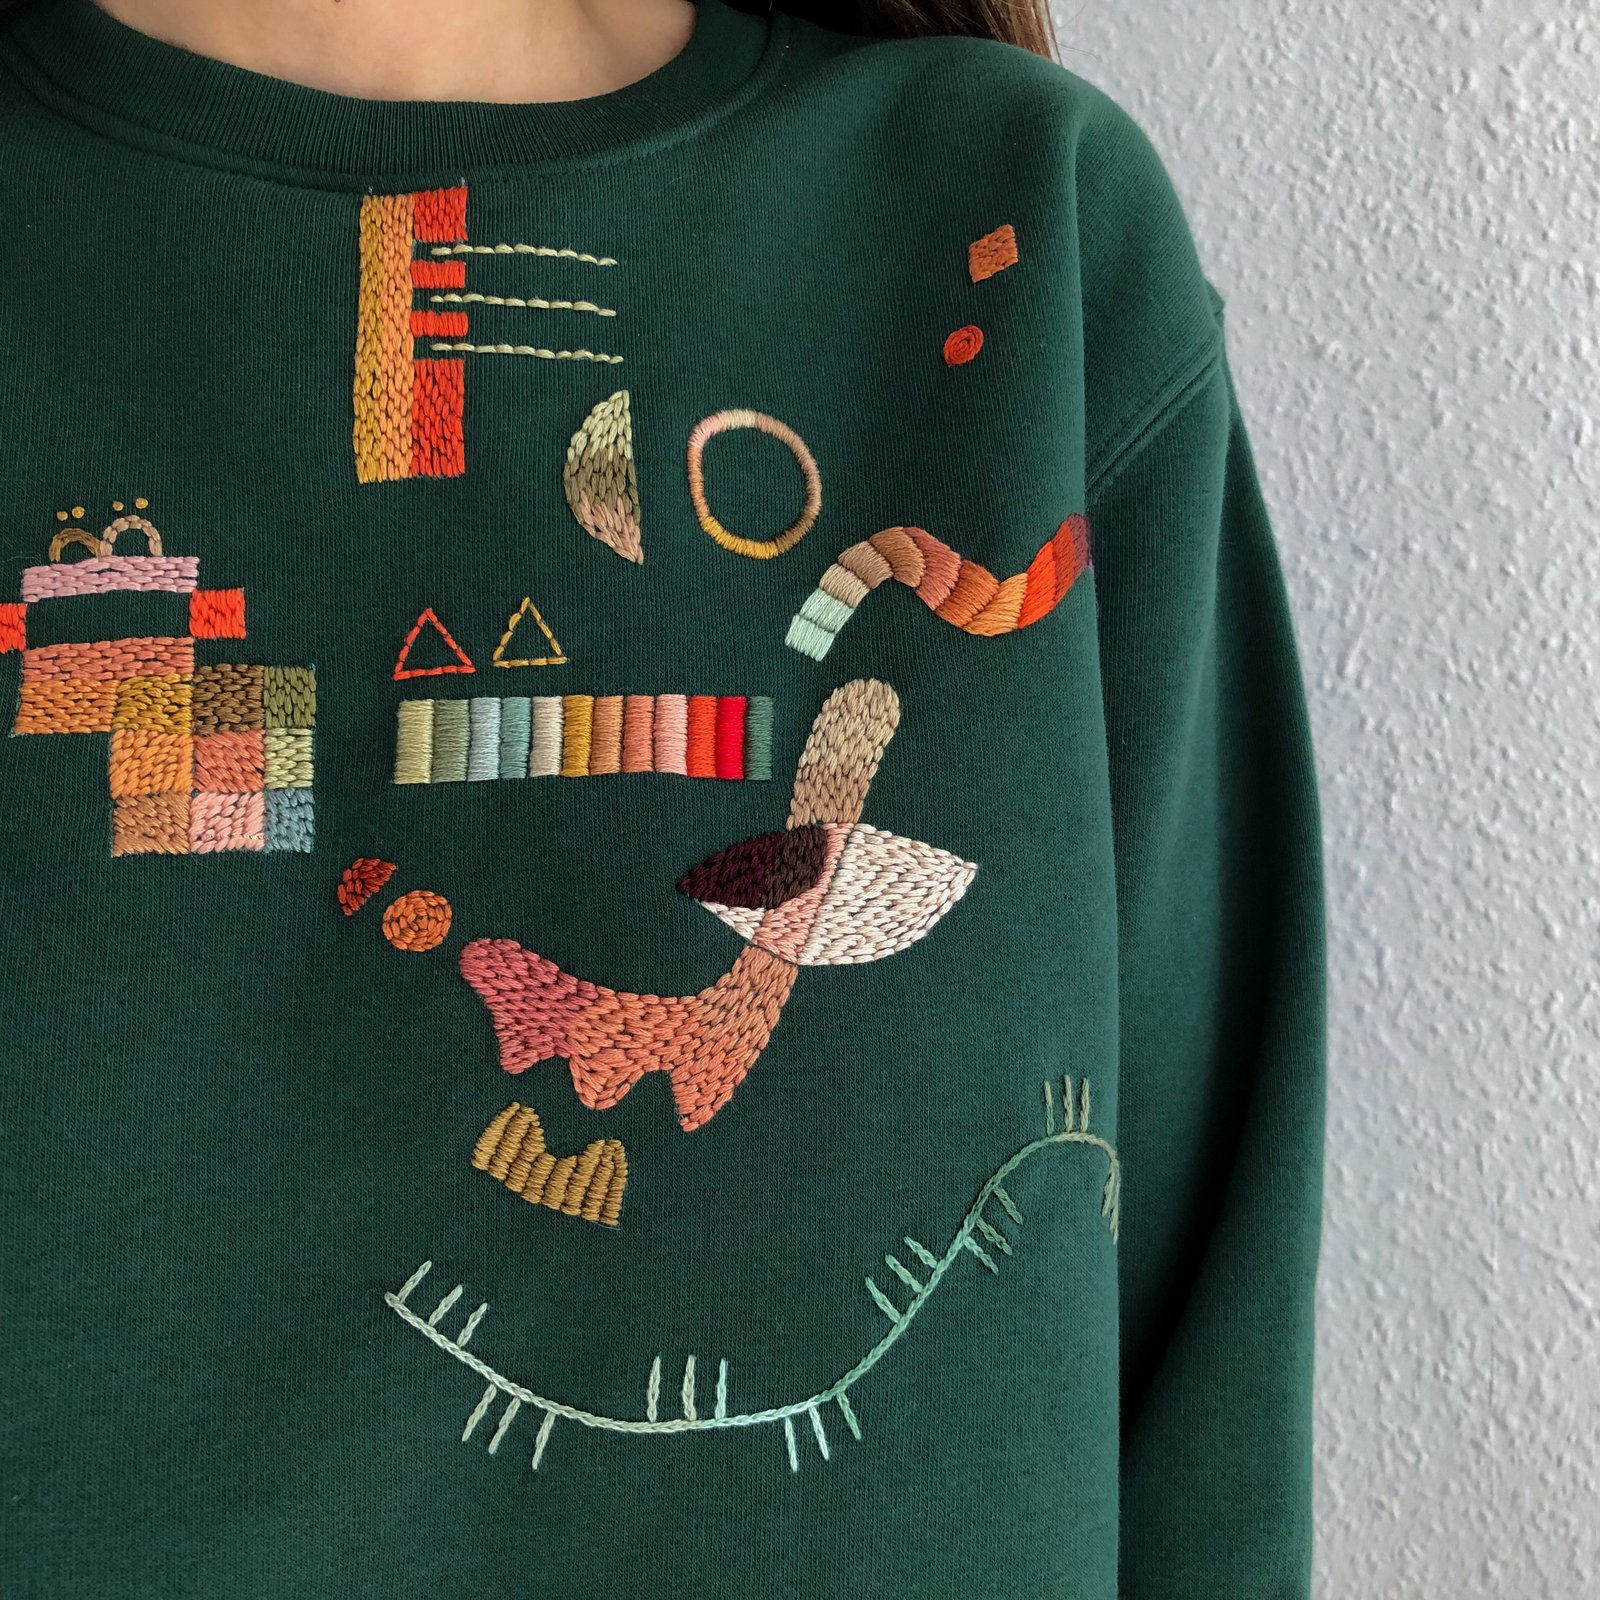 MISEHUFU Mädchen Stitching Dreidimensional Cute Design Pullover Sweatshirt Kreative Stickerei Dreidimensionale Niedliche Frosch Kopfbedeckung Hoodie Sweatshirt